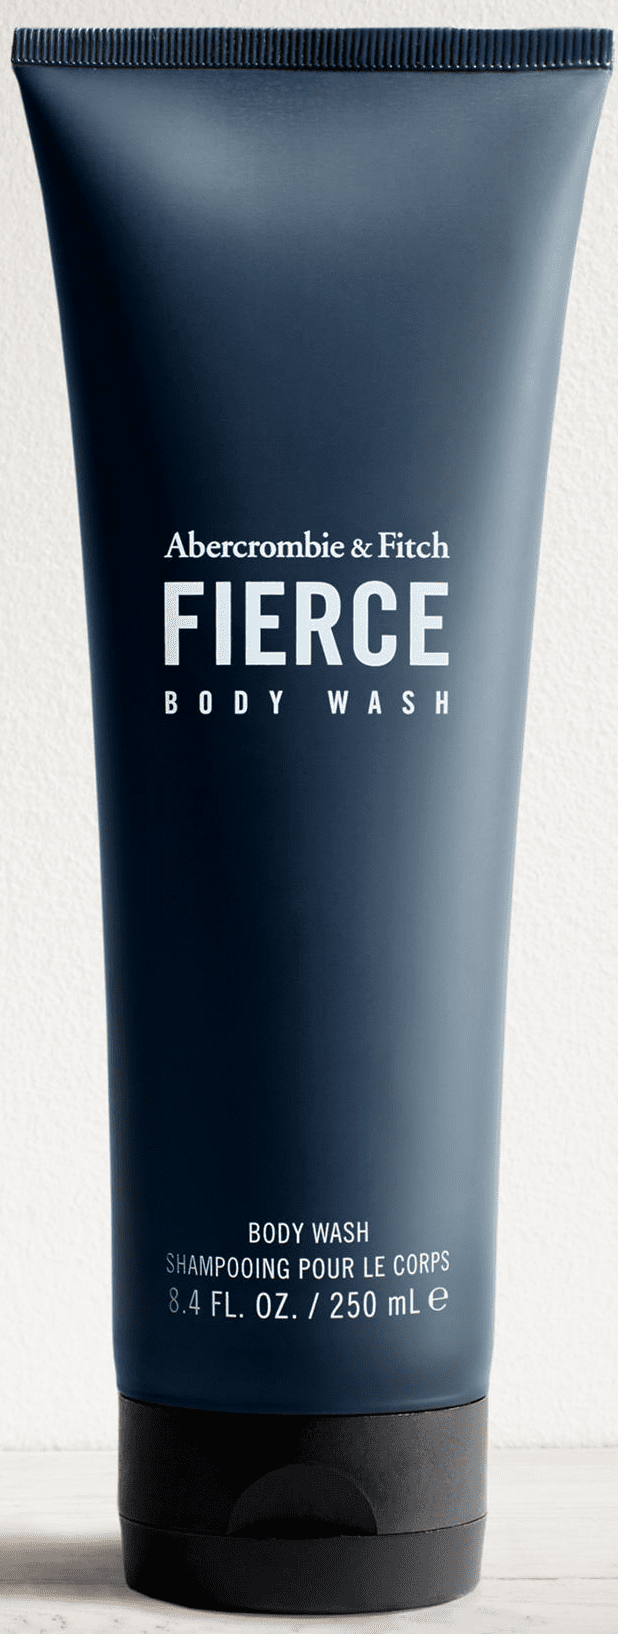 abercrombie fierce body wash